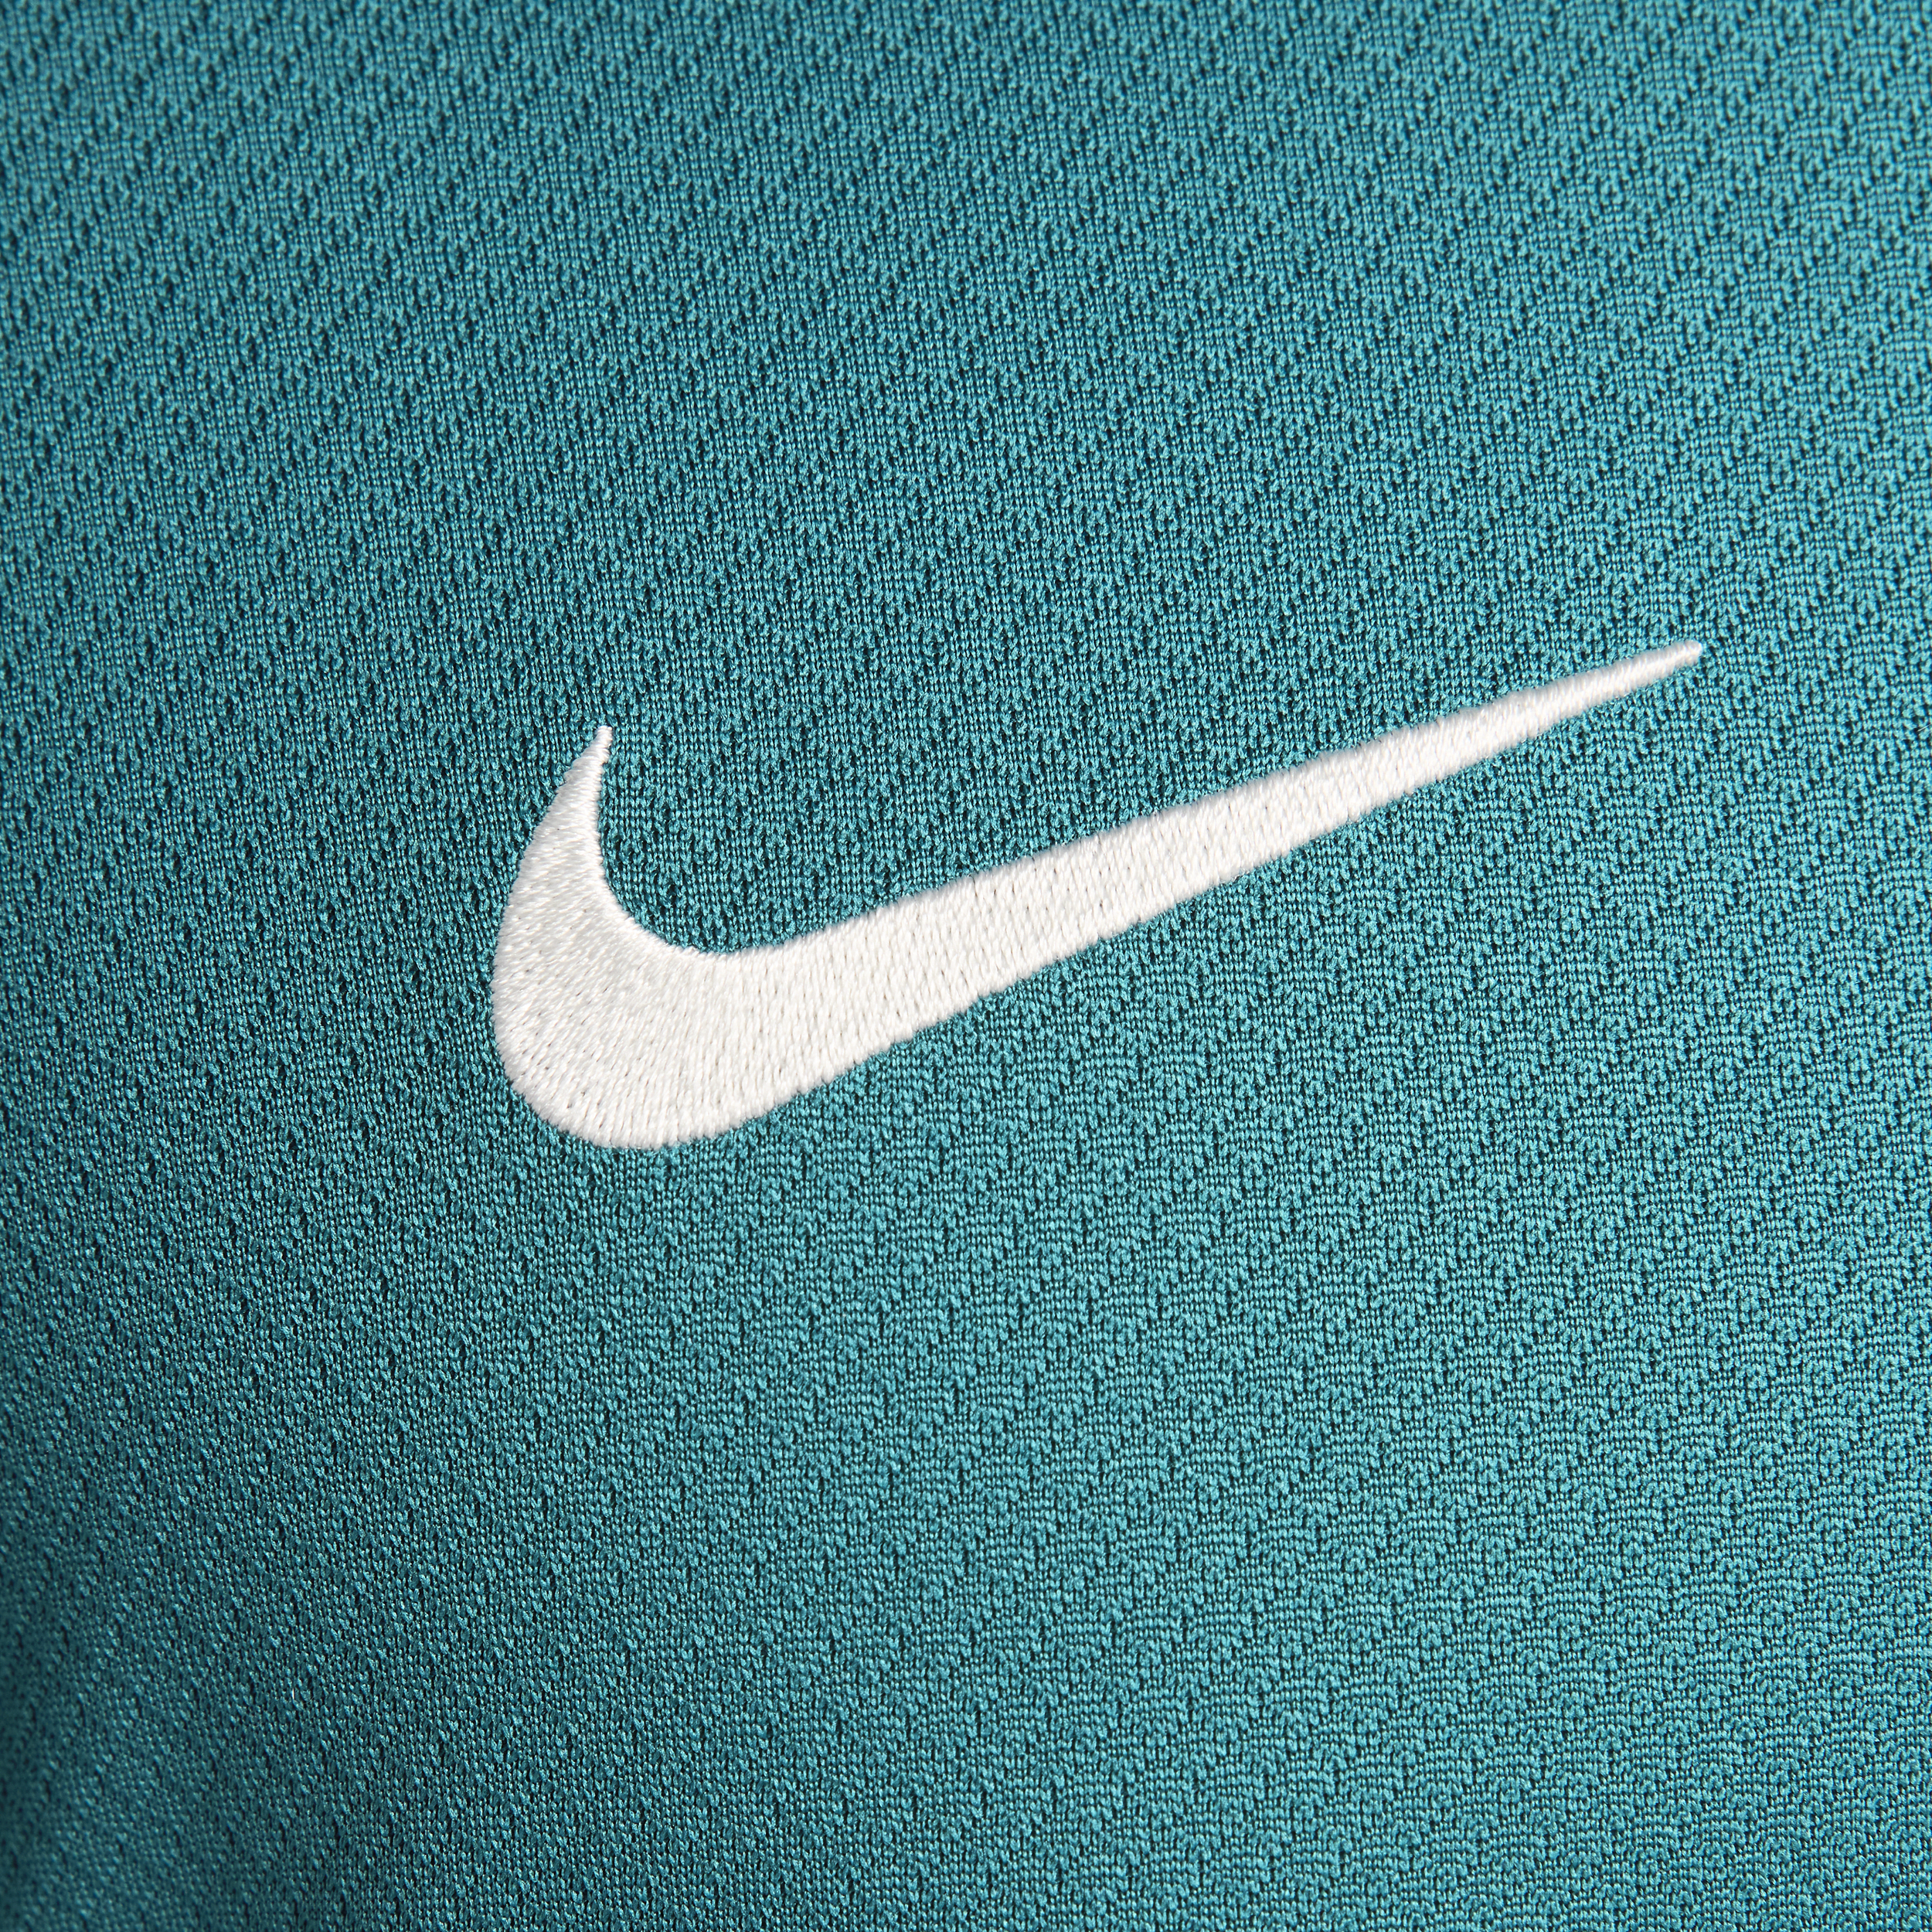 Nike Portugal Strike Dri-FIT knit voetbaltop met korte mouwen voor heren Groen